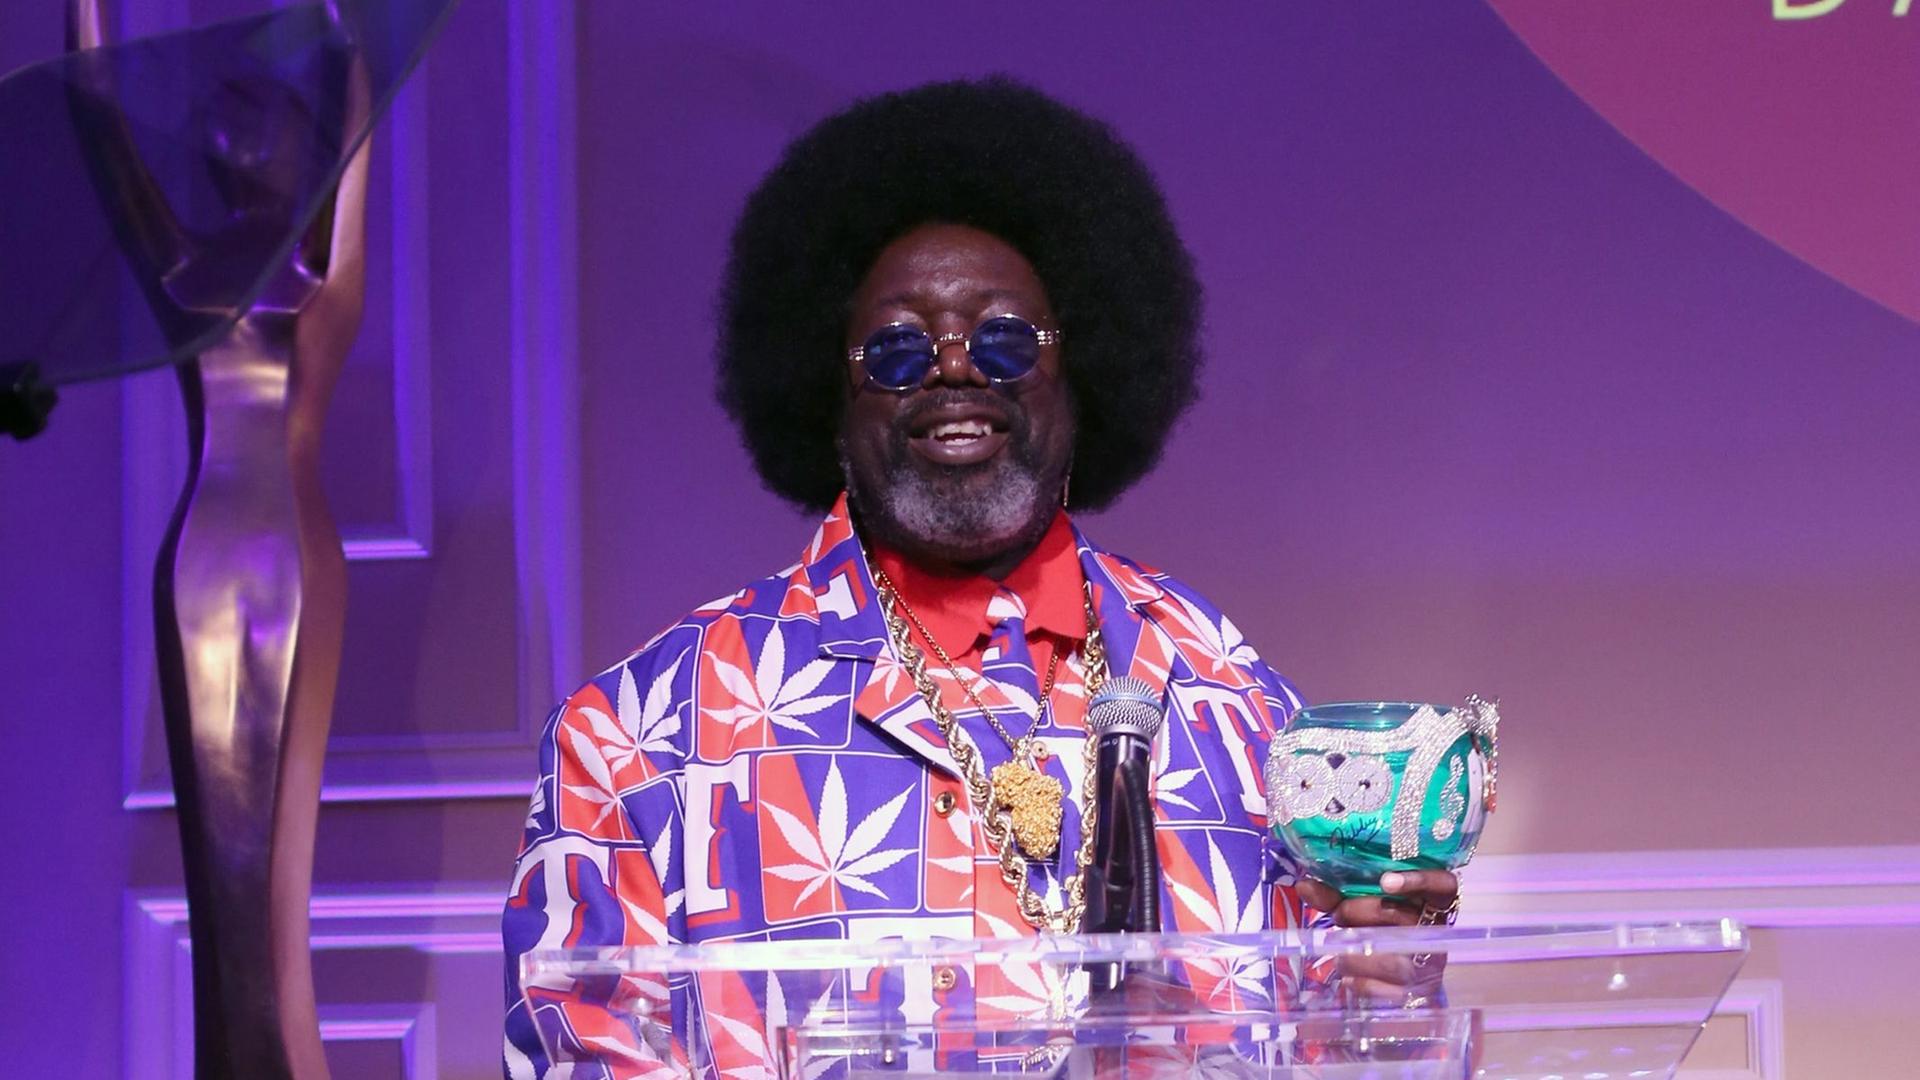 Der Rapper Afroman steht in einem sehr bunten Anzug mit aufgedruckten Cannabis-Blättern hinter einem durchsichtigen Redepult. Er trägt Bart, Sonnenbrille und eine Afro-Frisur.